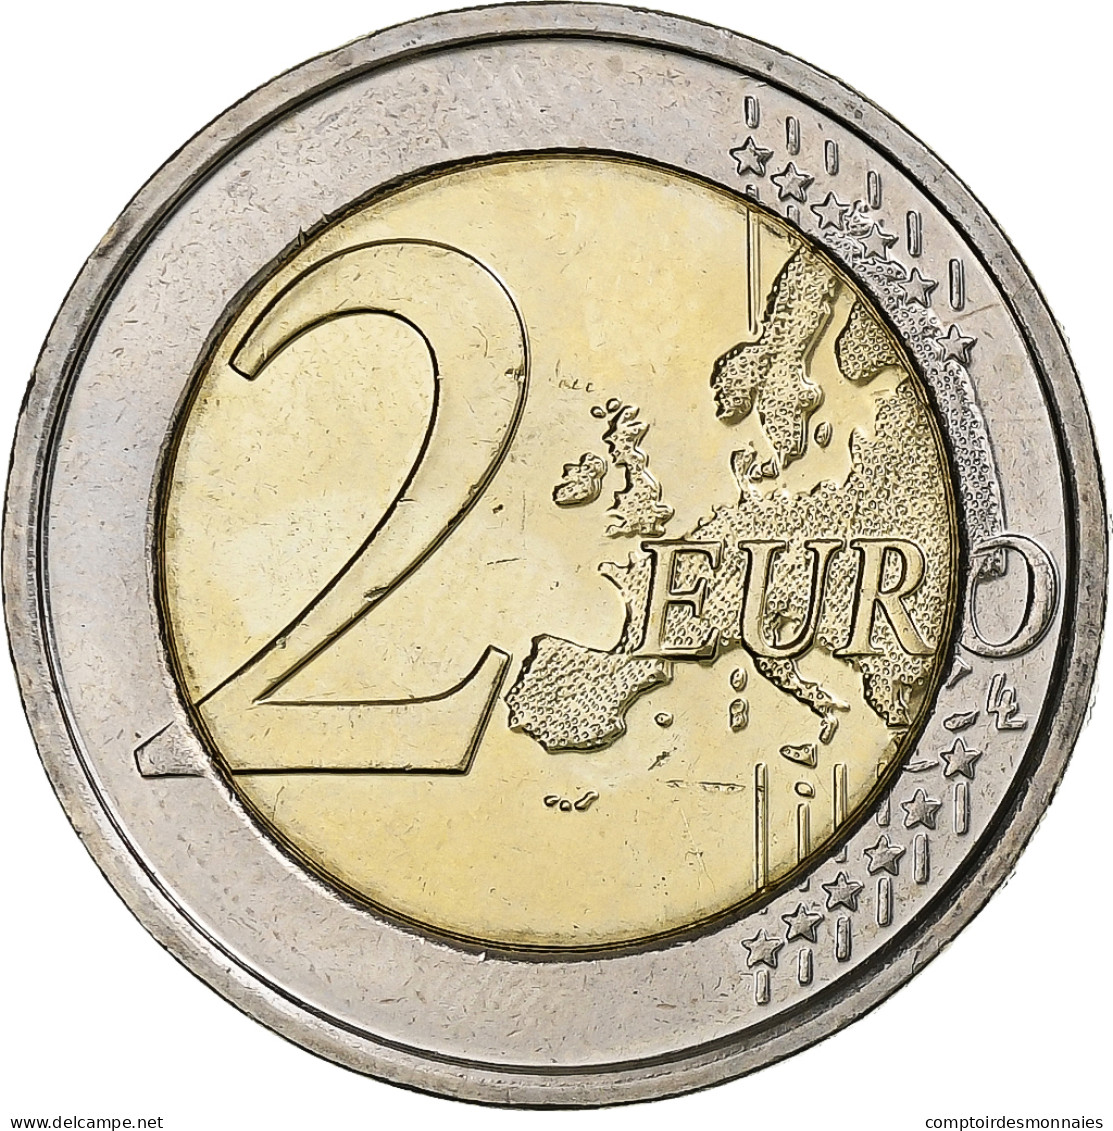 Belgique, 2 Euro, 2013, INSTITUT MÉTÉOROLOGIQUE, SPL, Bimétallique - Bélgica